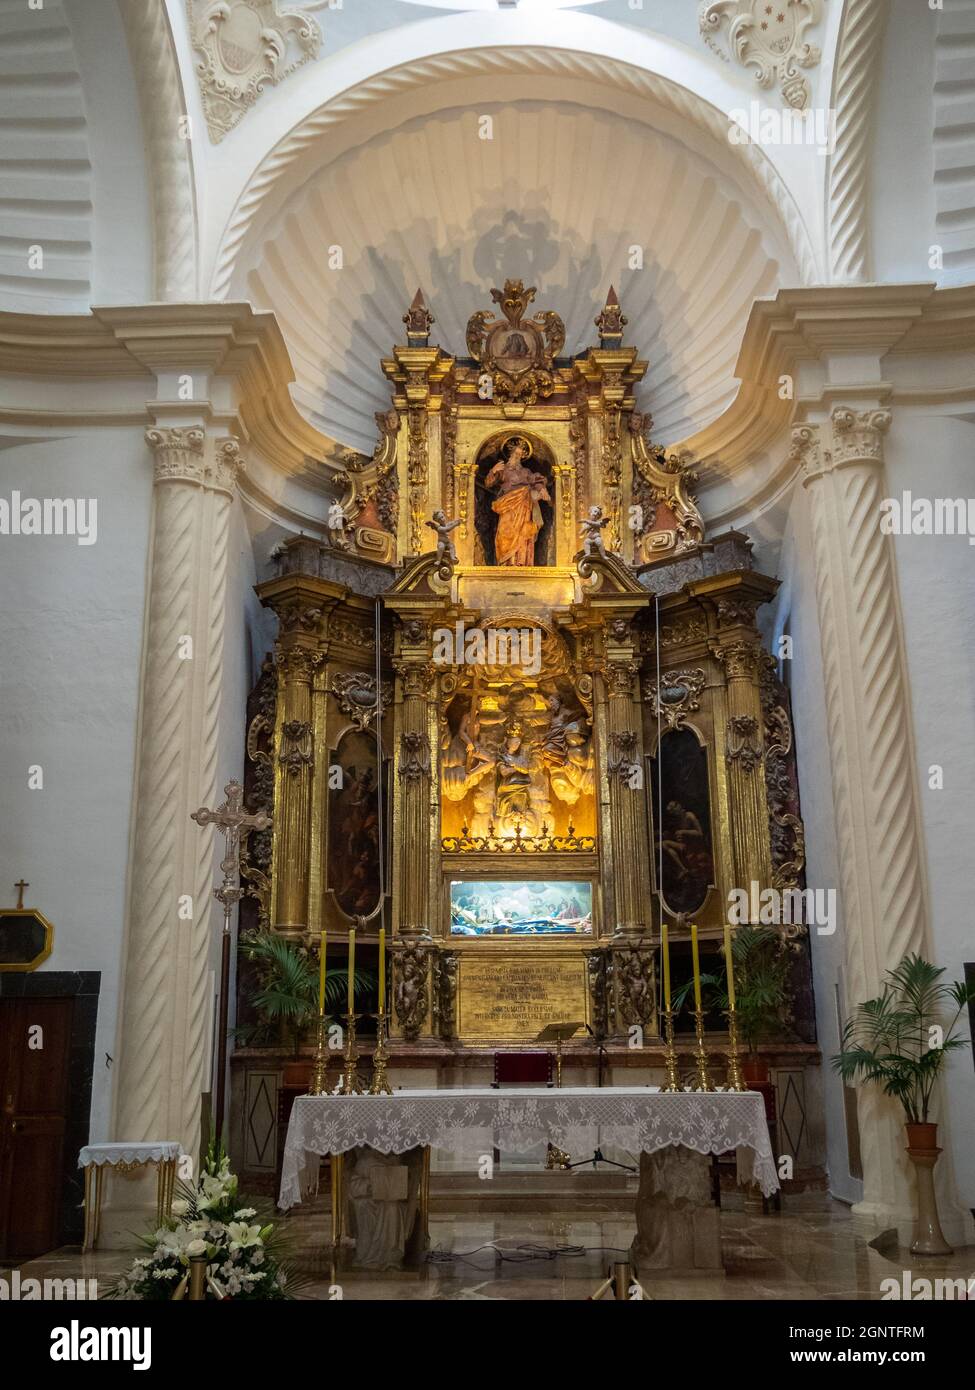 Església de Sant Bartomeu interior, Valdemossa, Mallorca Stock Photo